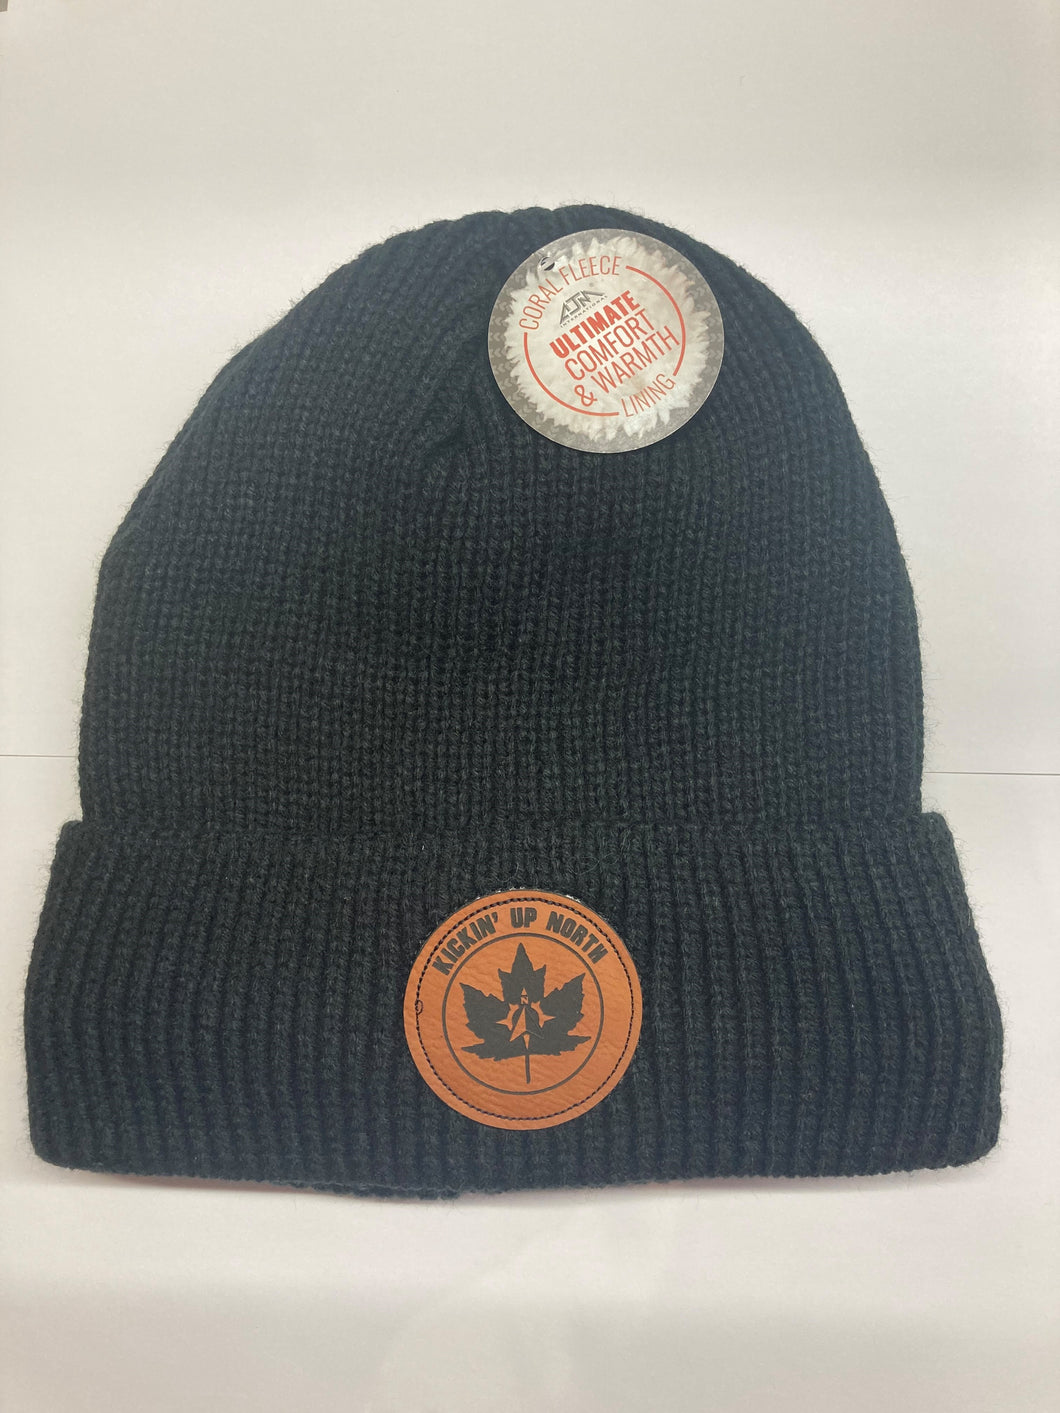 Kickin' Up North Men's Winter Hat